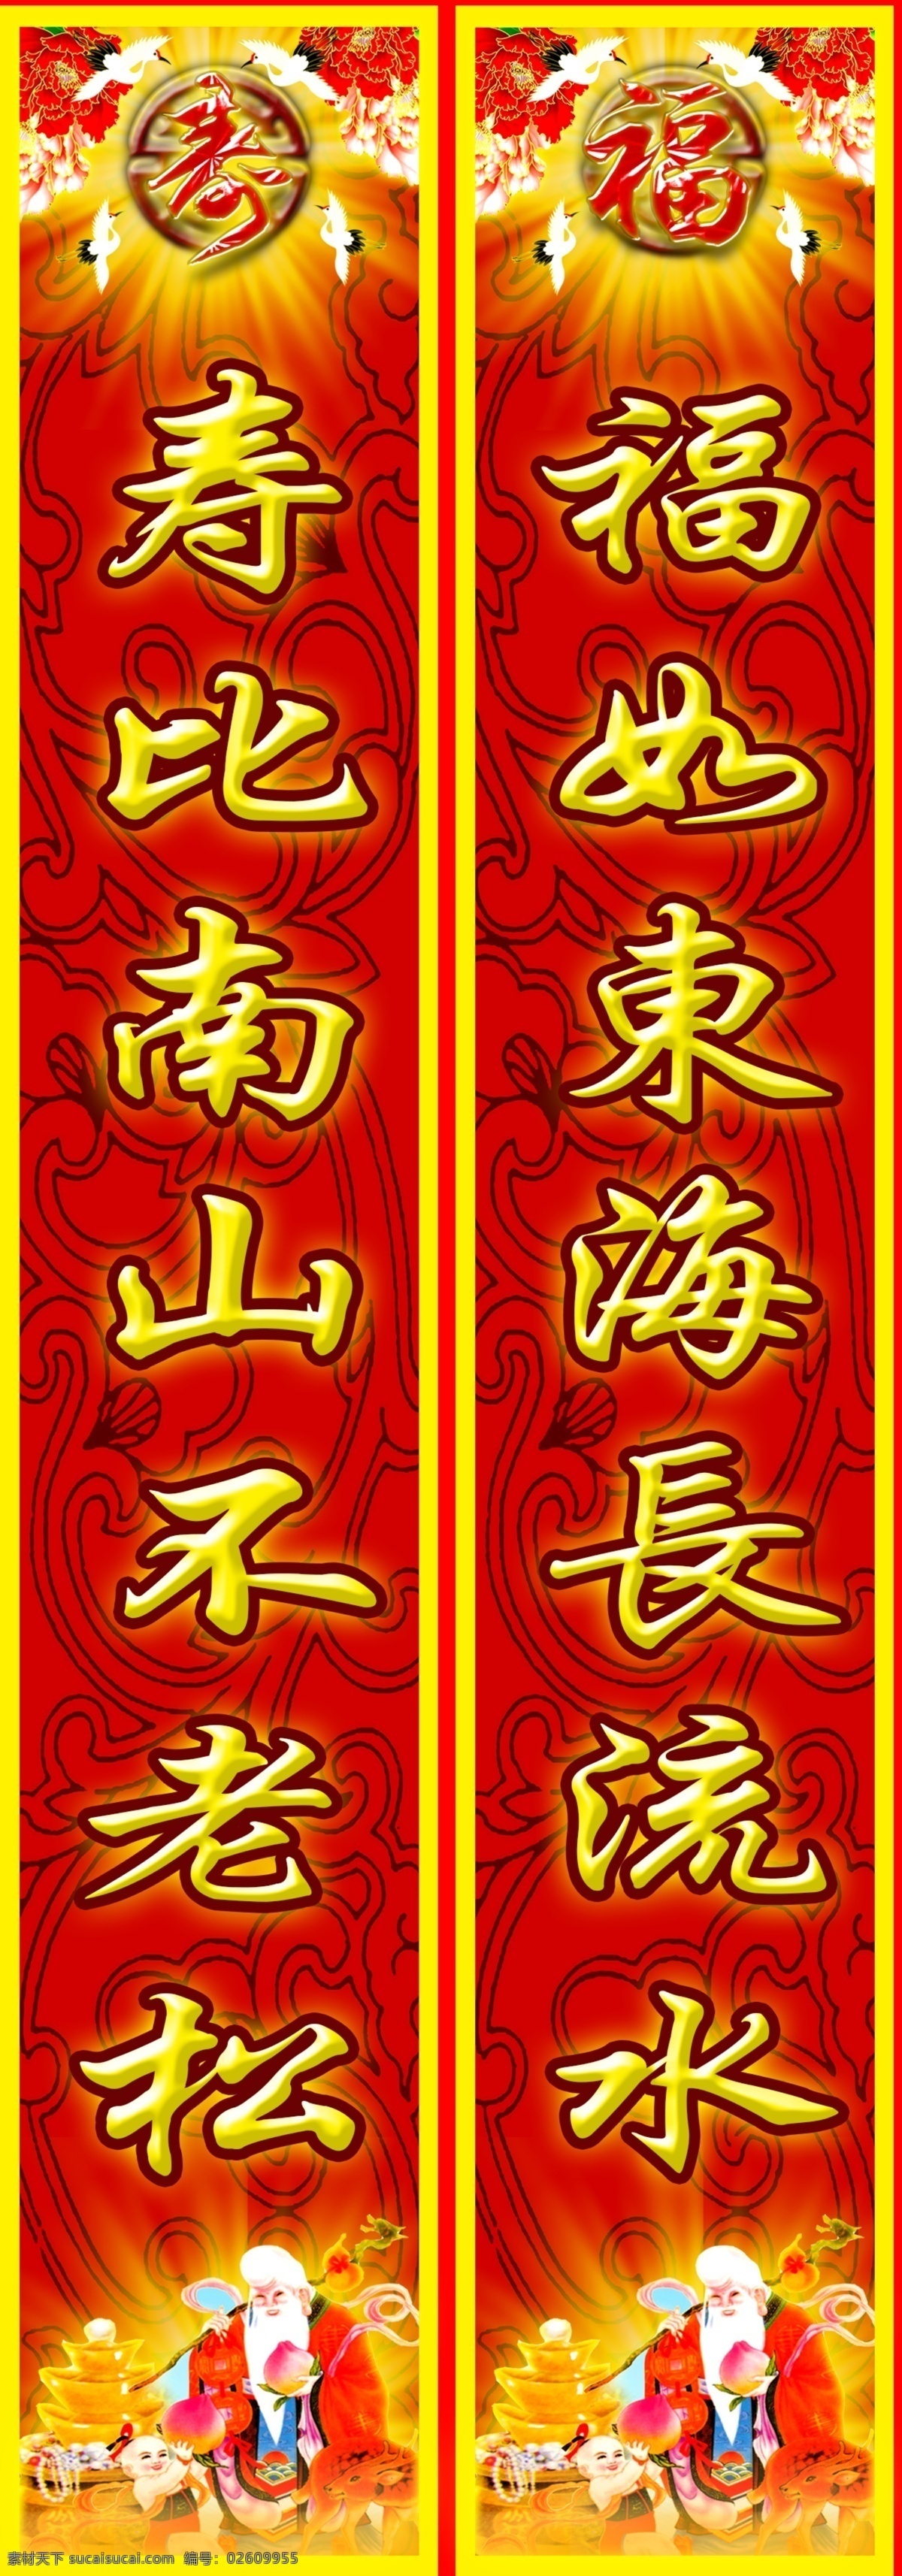 寿星对联 红色代表吉祥 黄光代表财福 寿星代表长命 应用了浮雕 寿星图片 合成效果 分层